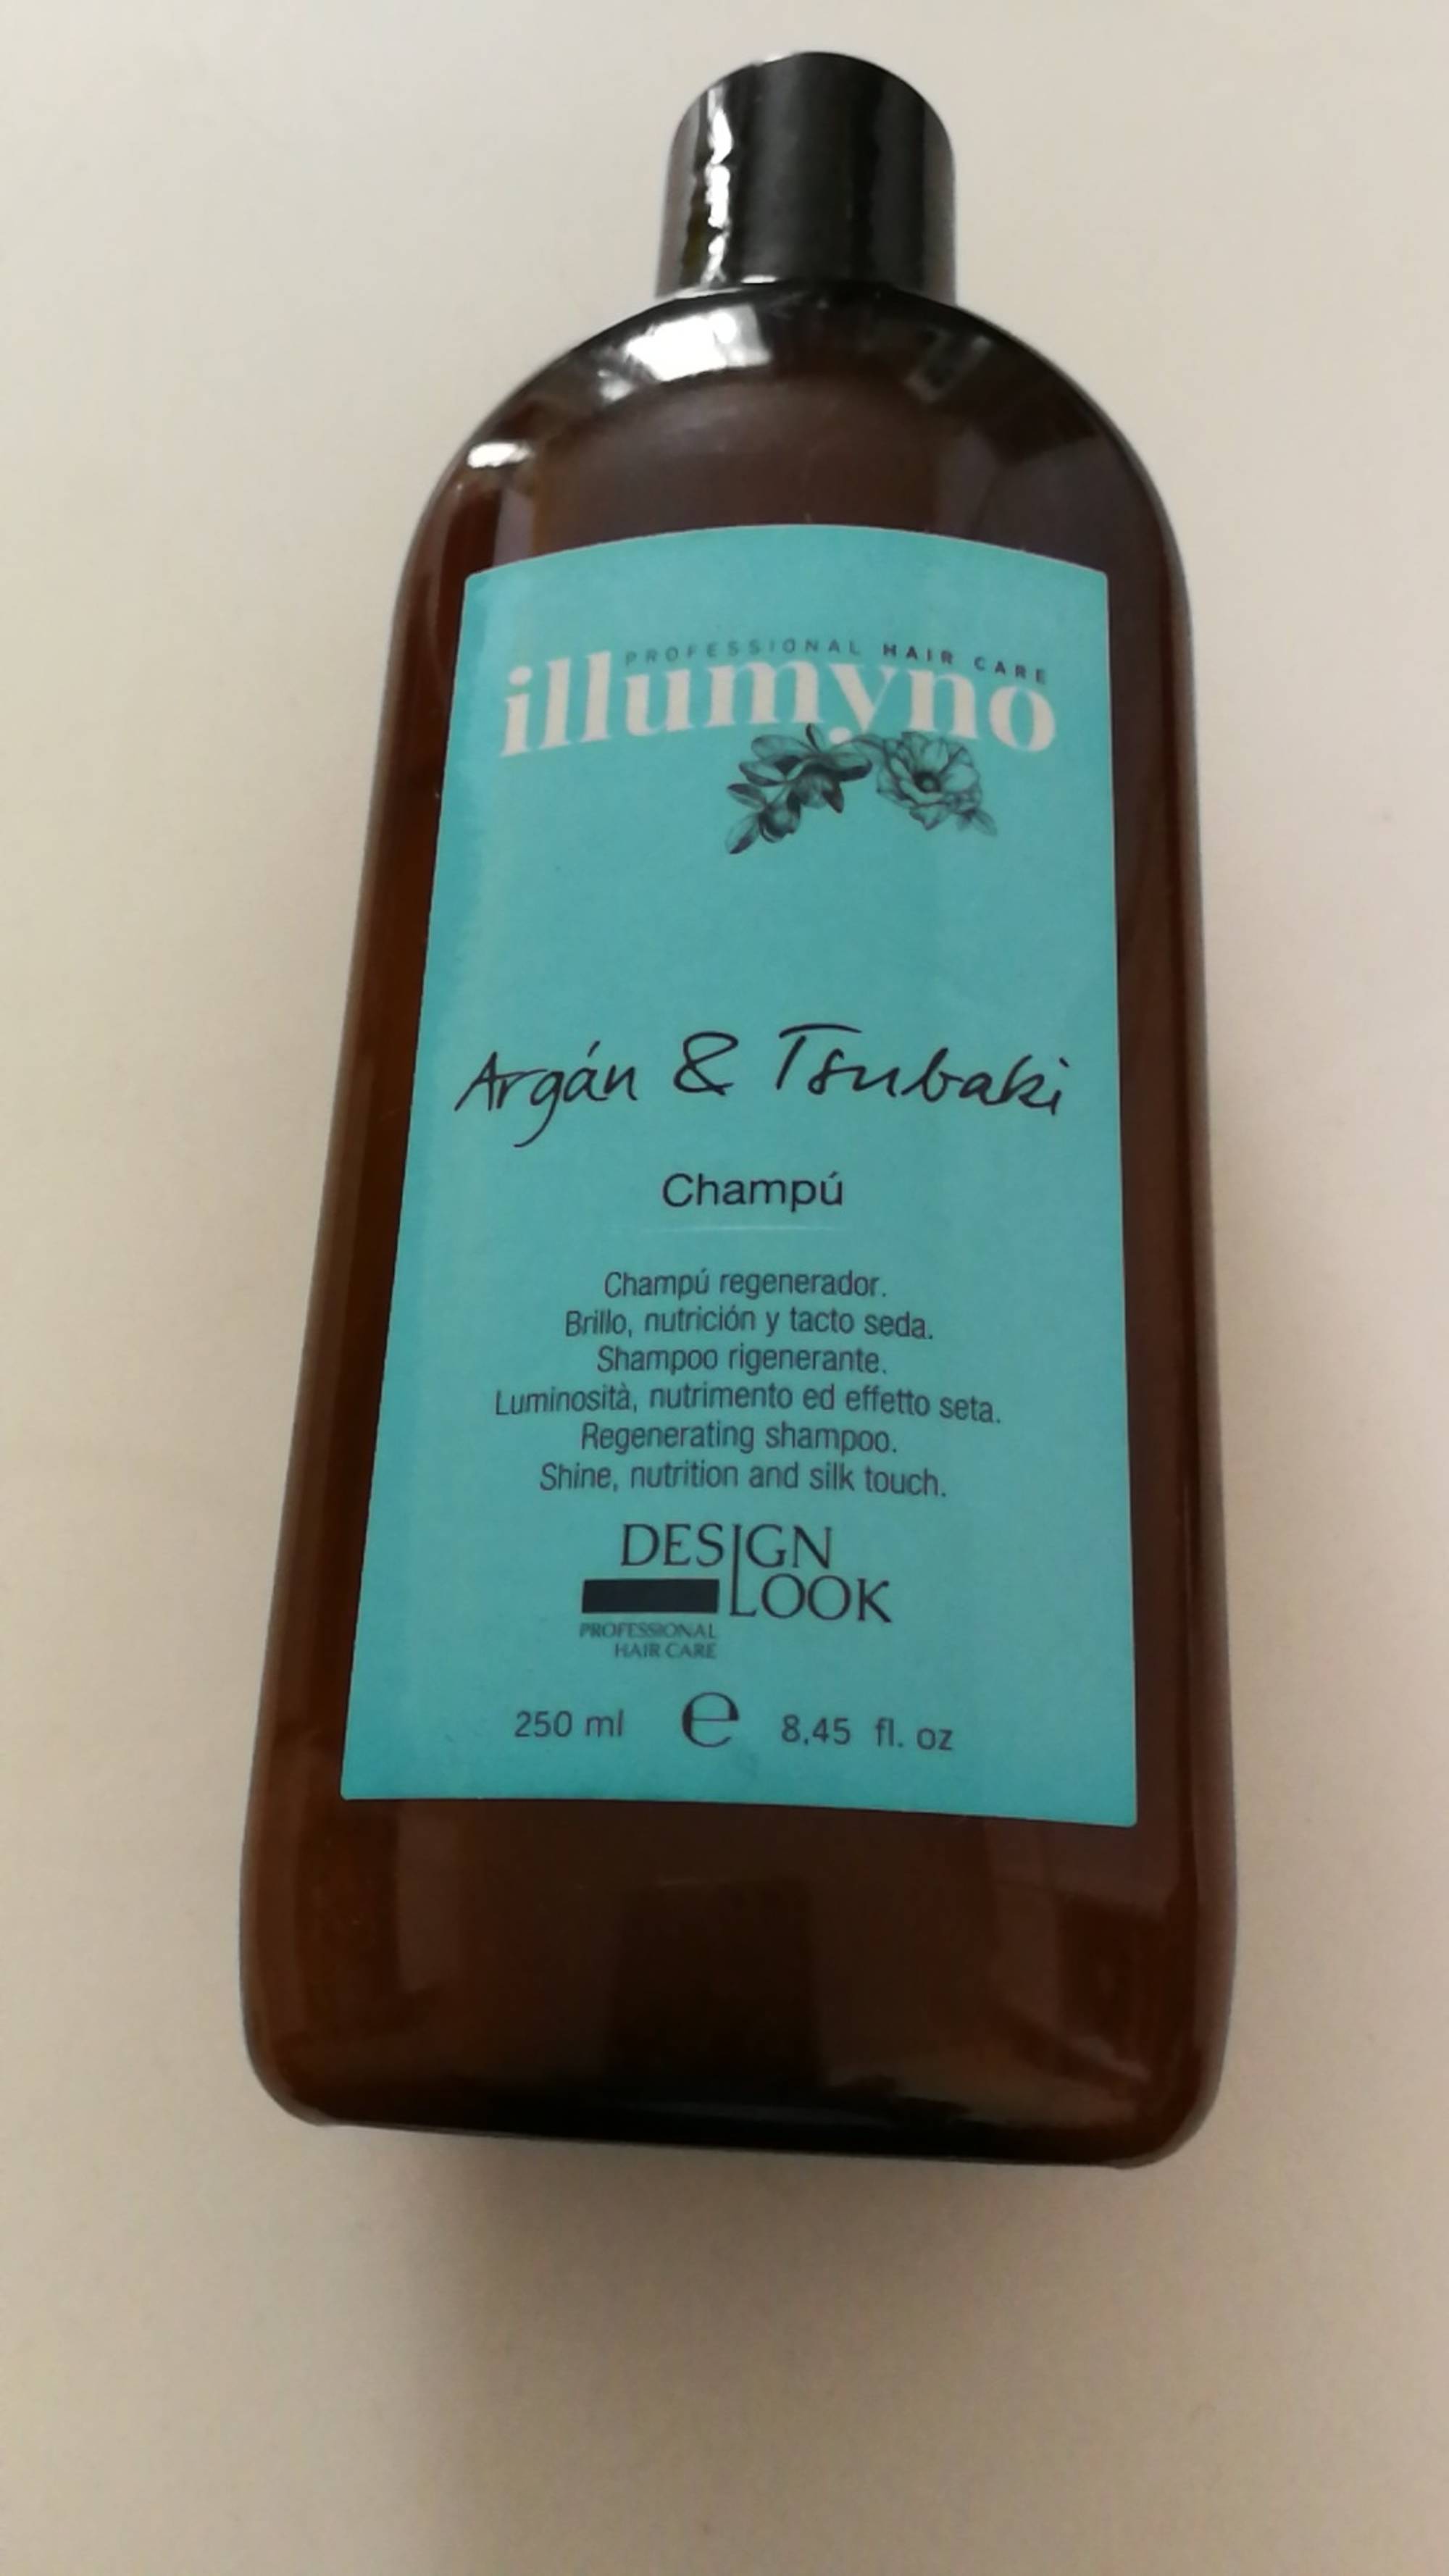 ILLUMYNO - Argan & tsubaki - Regenerating shampoo